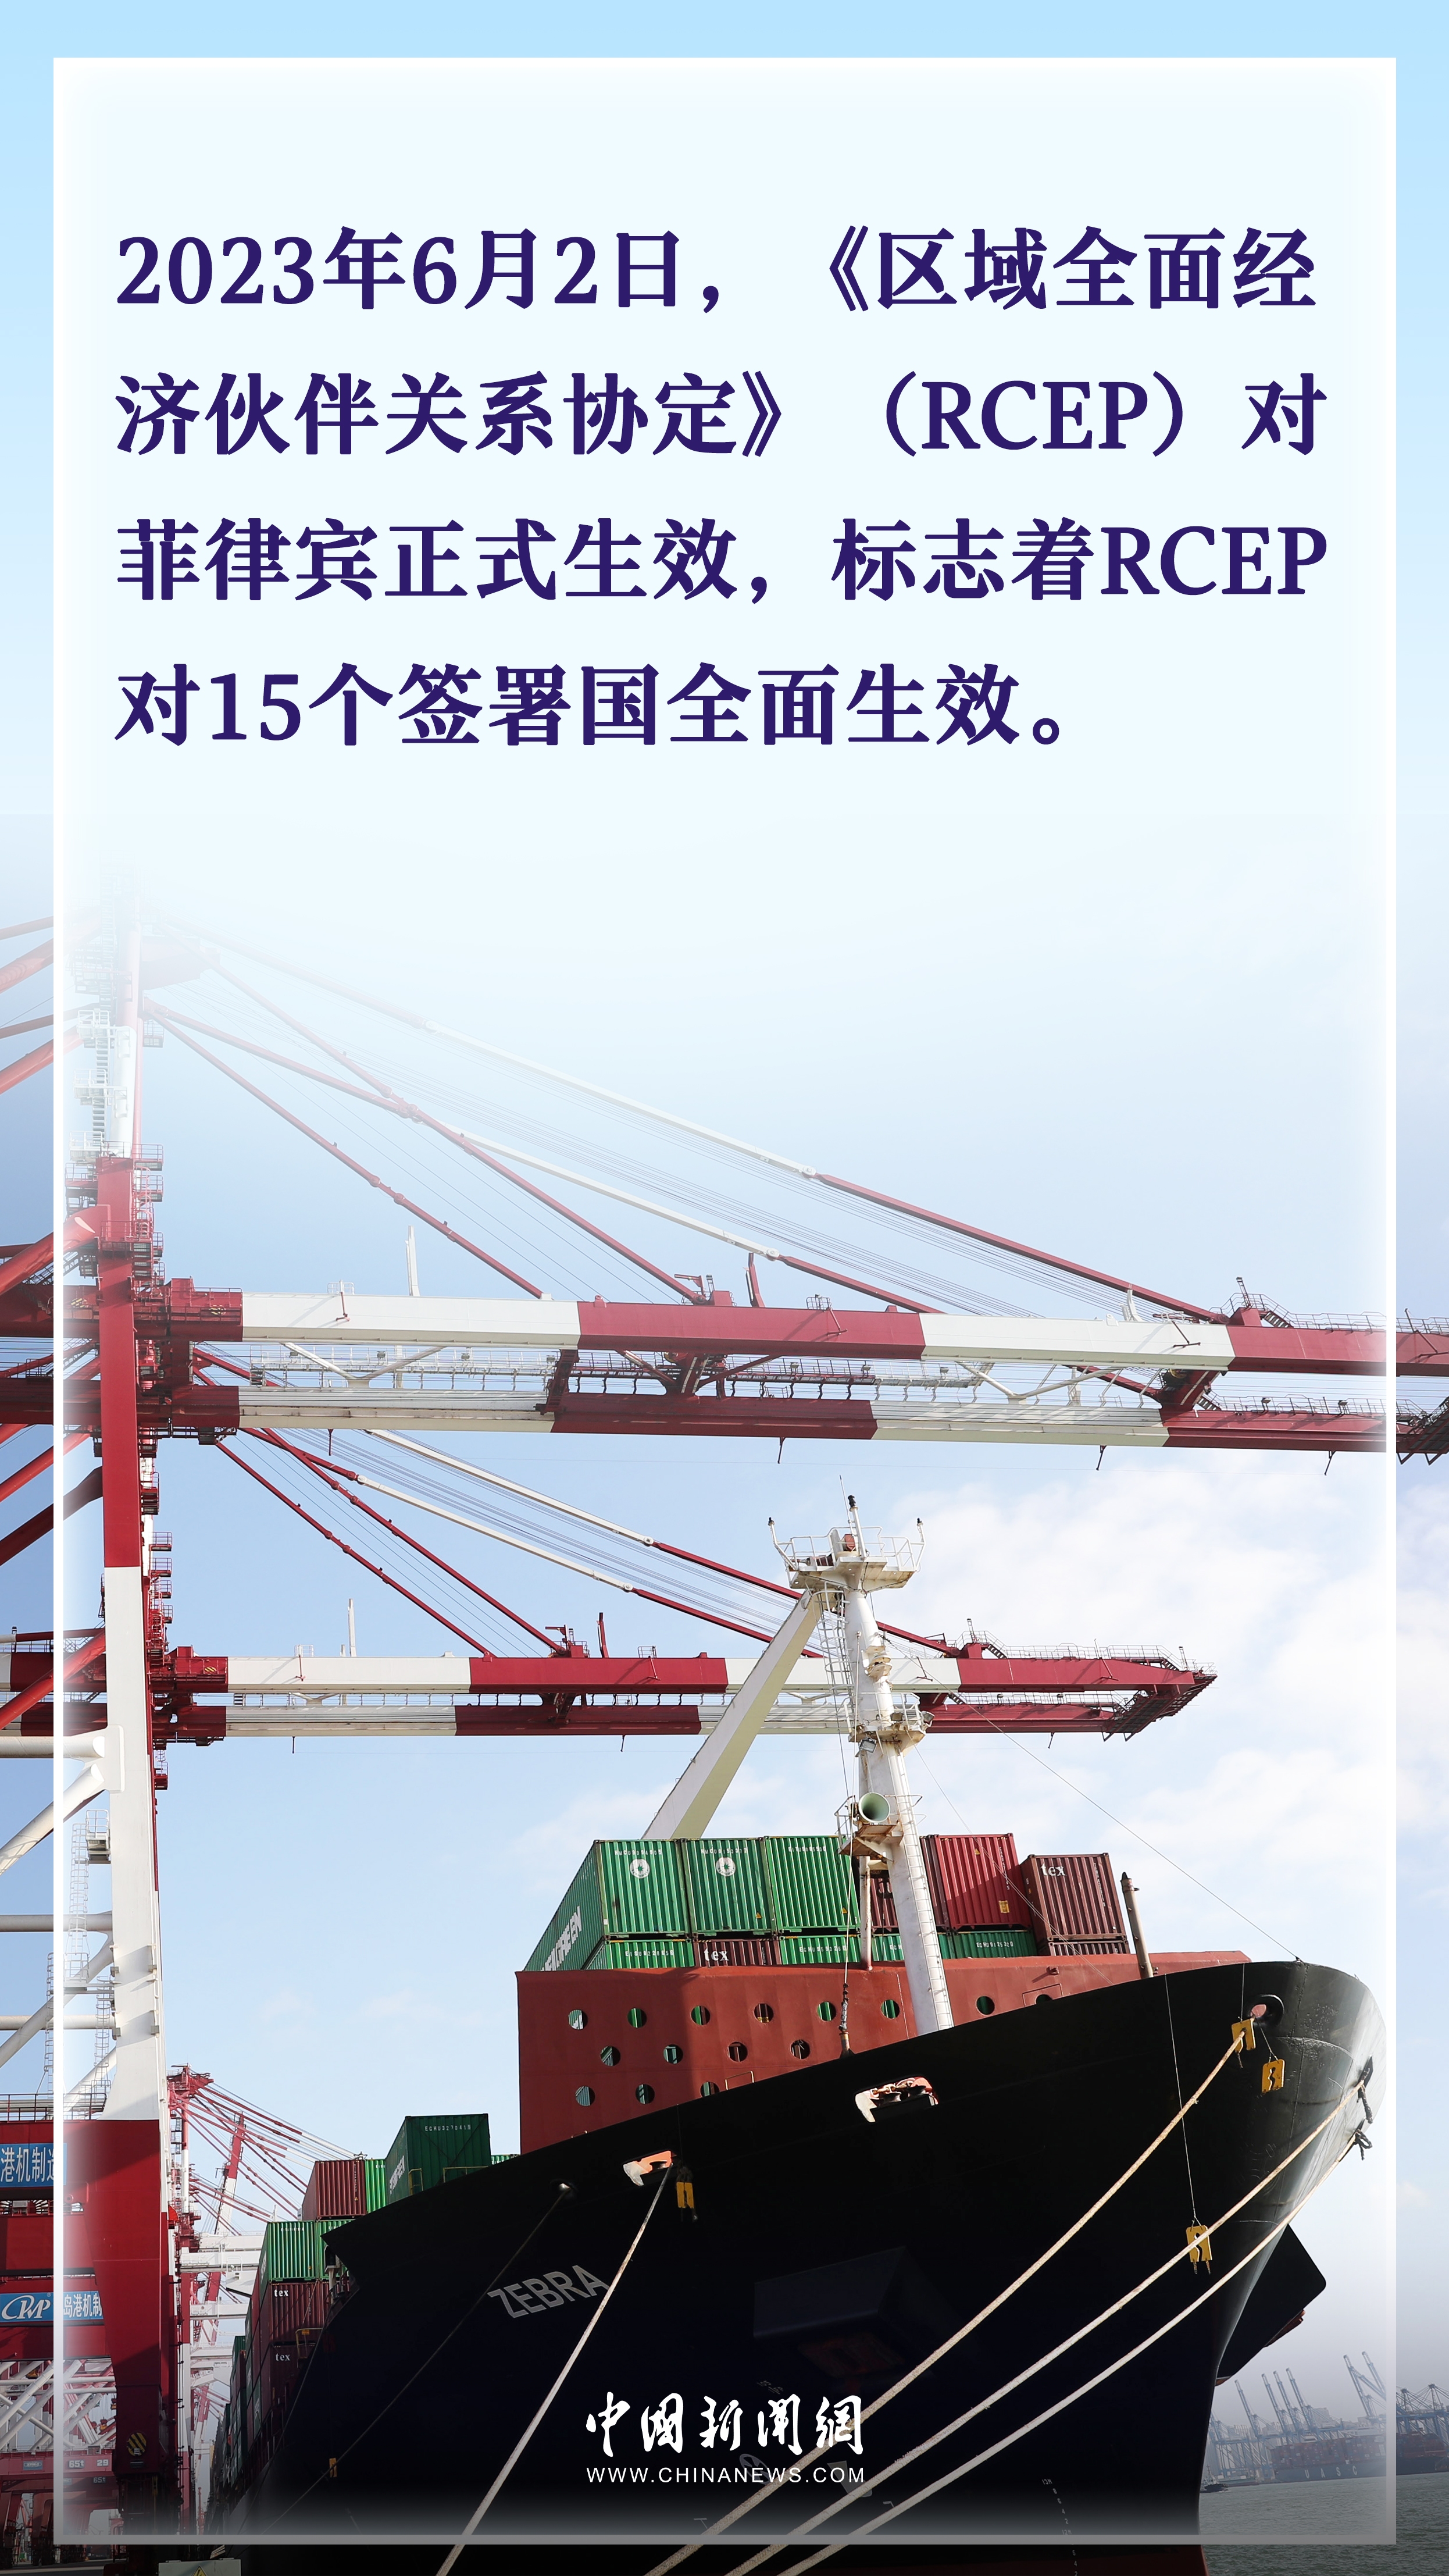 国际热评：全球最大自贸区满帆前行RCEP生动实践中国理念